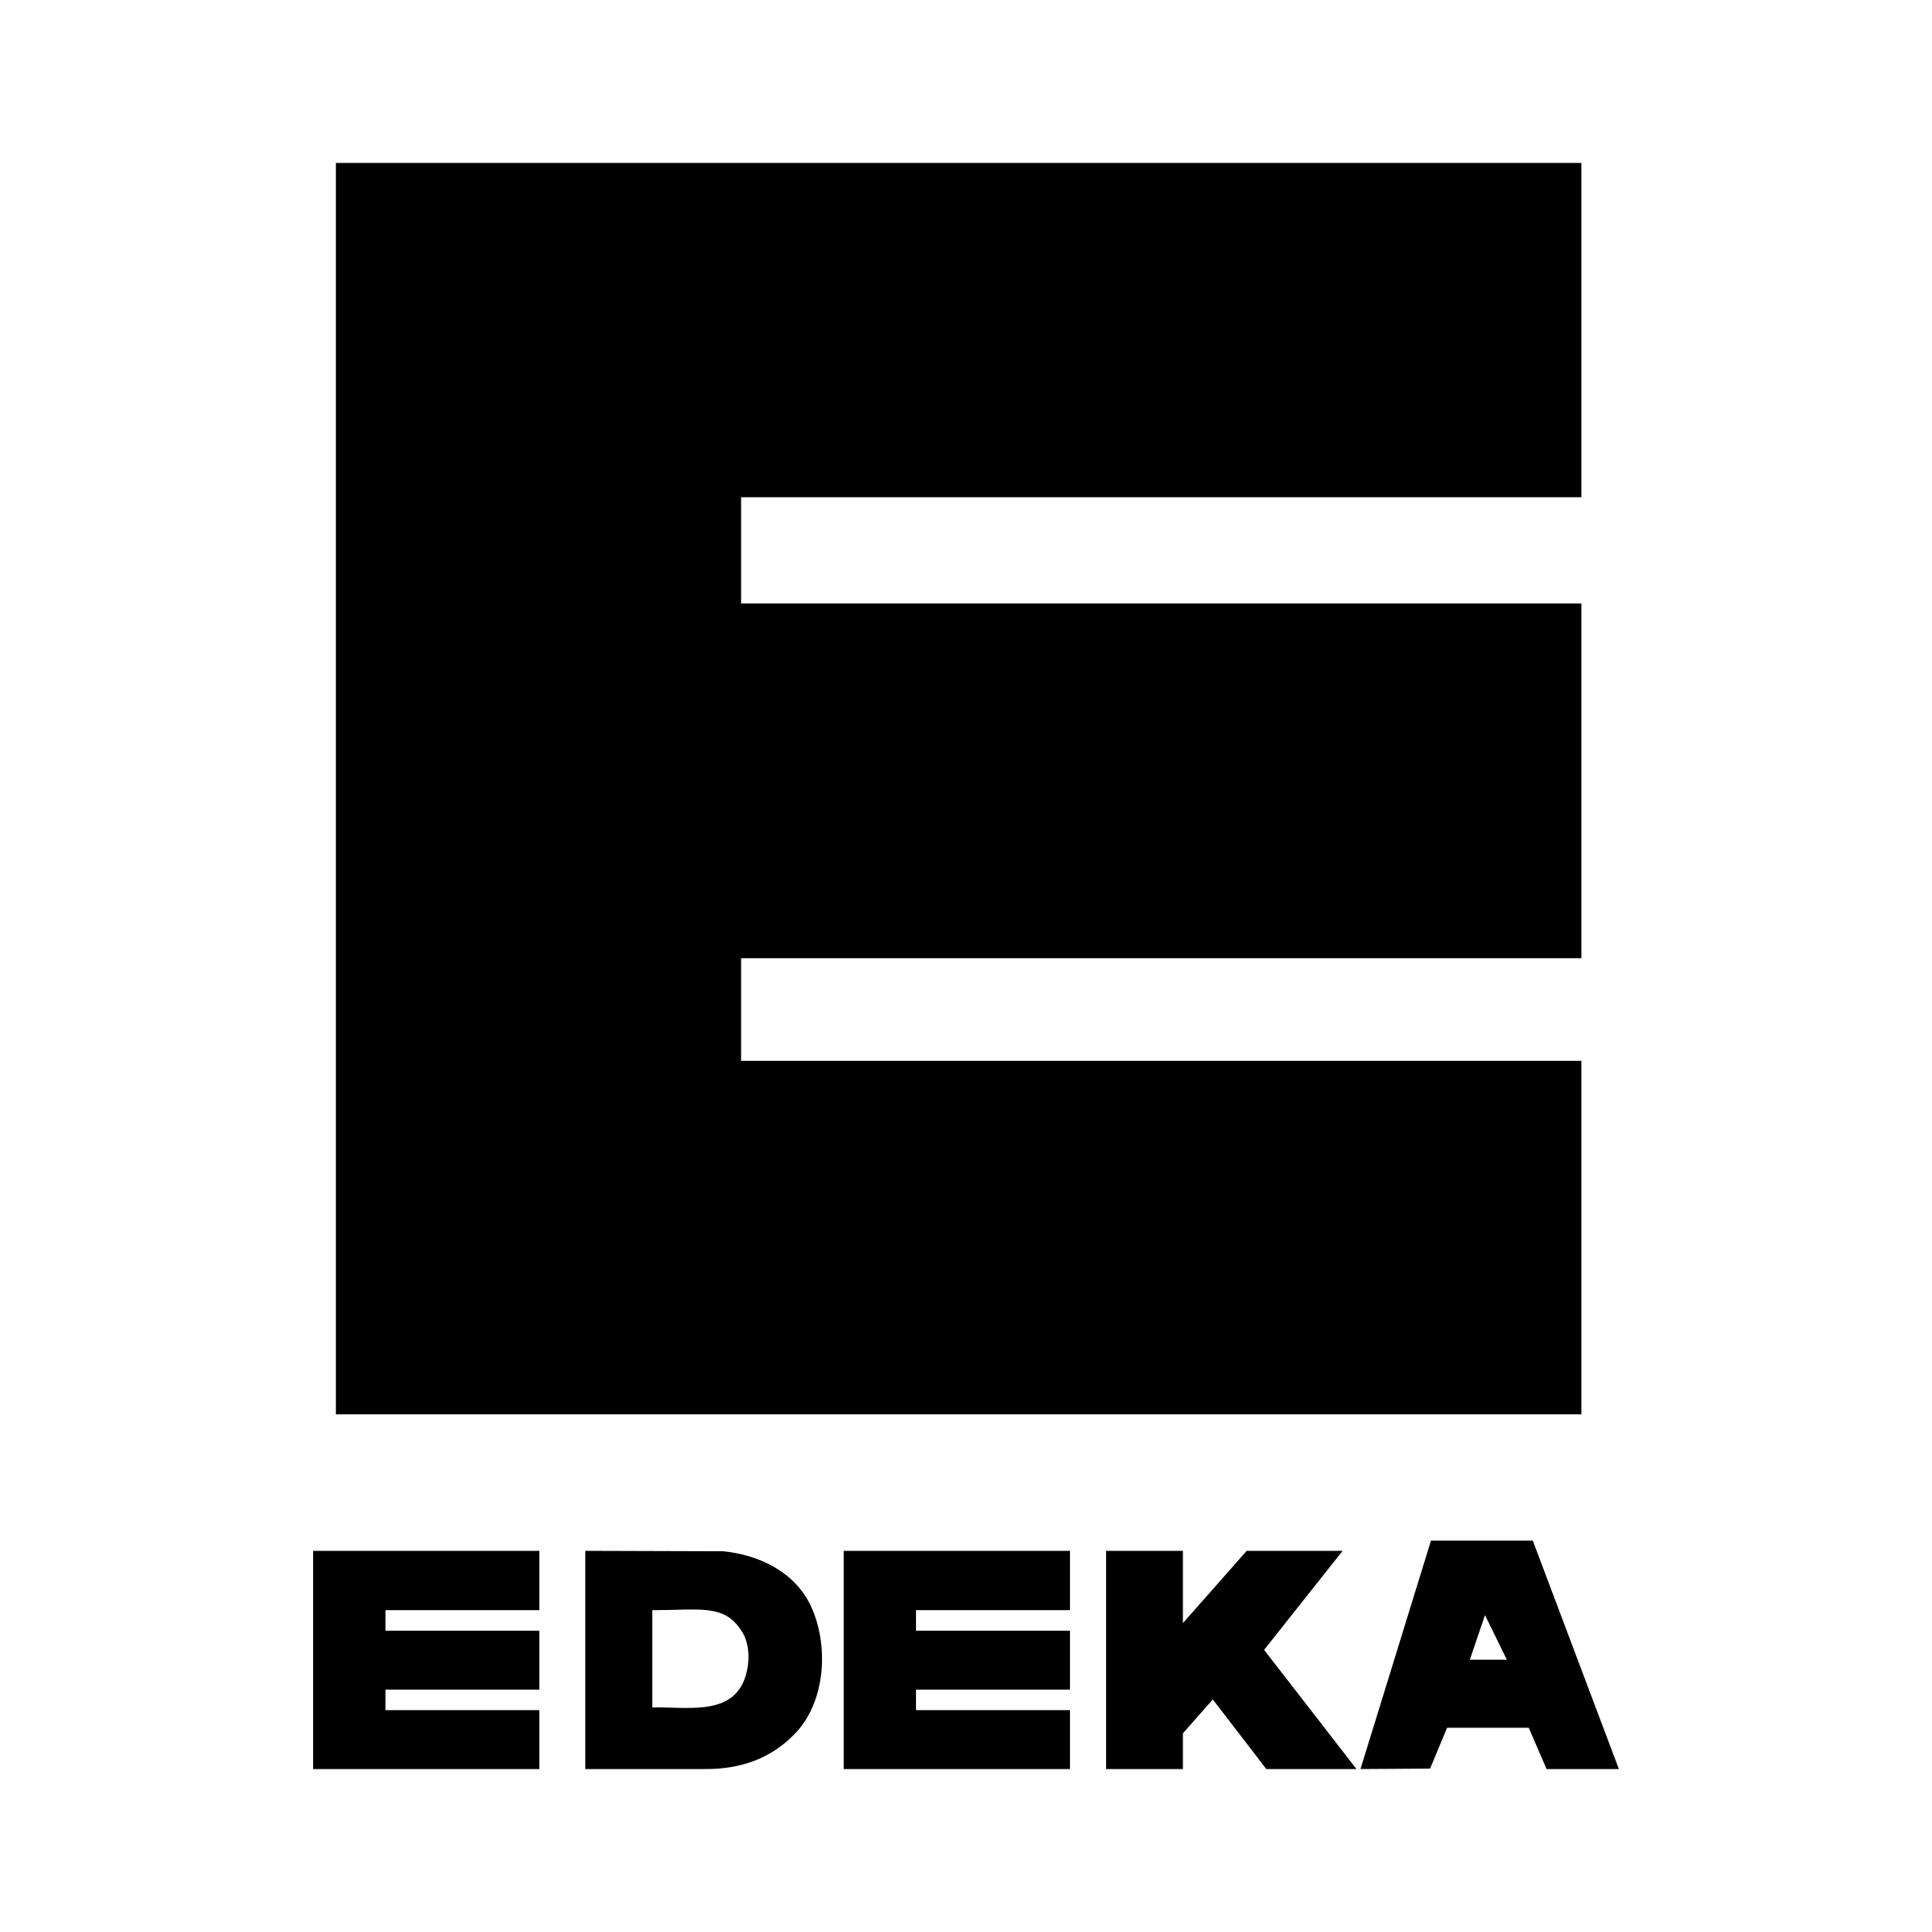 Edeka Logo - Edeka Logo PNG Transparent & SVG Vector - Freebie Supply